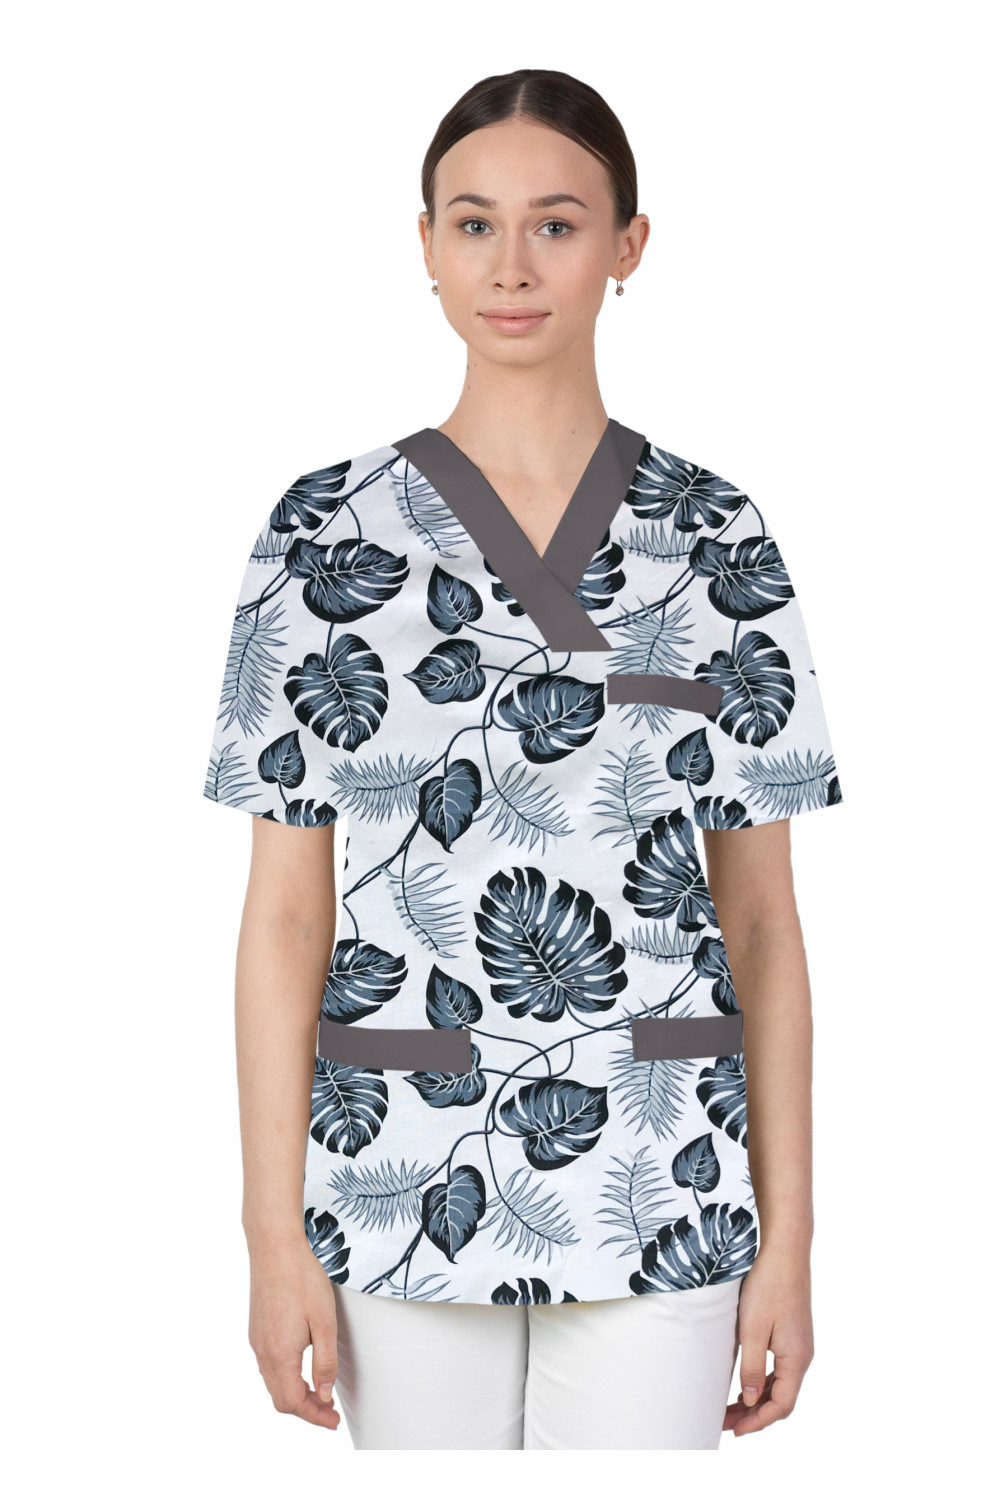 Bluza medyczna we wzorki kolorowa damska M-074G liście szare na białym tle